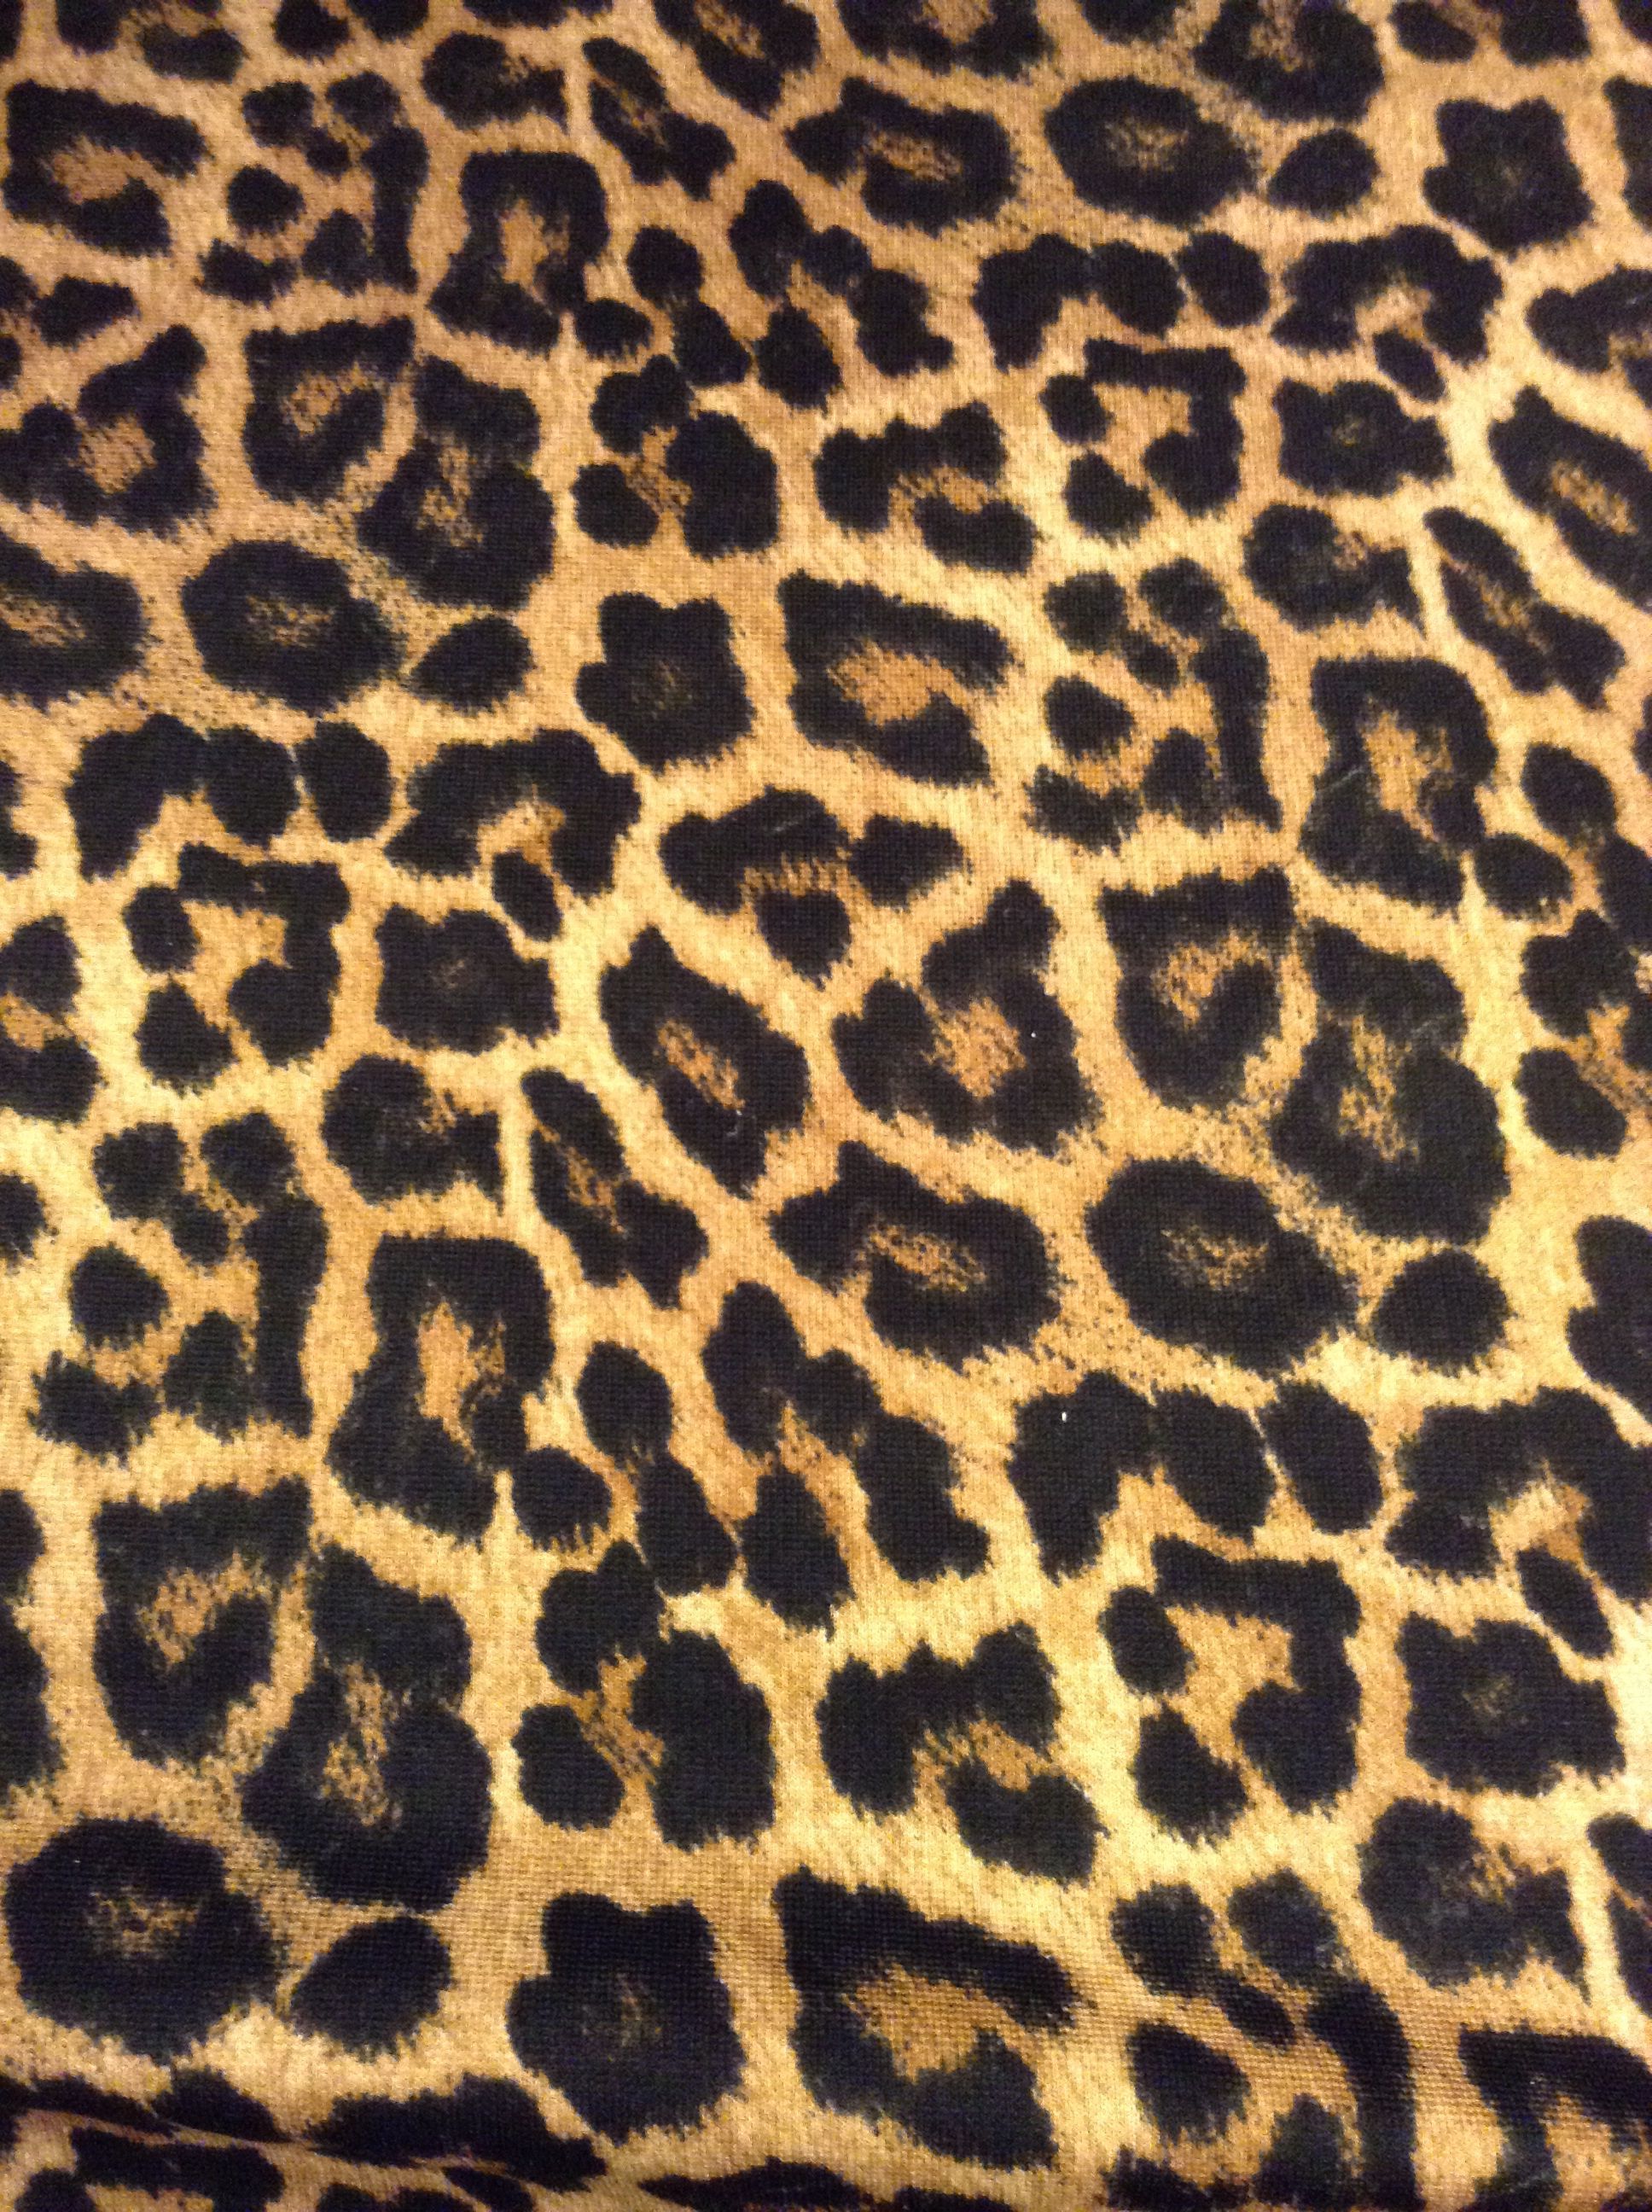 Leopard Pattern Wallpaper Free Leopard Pattern Background